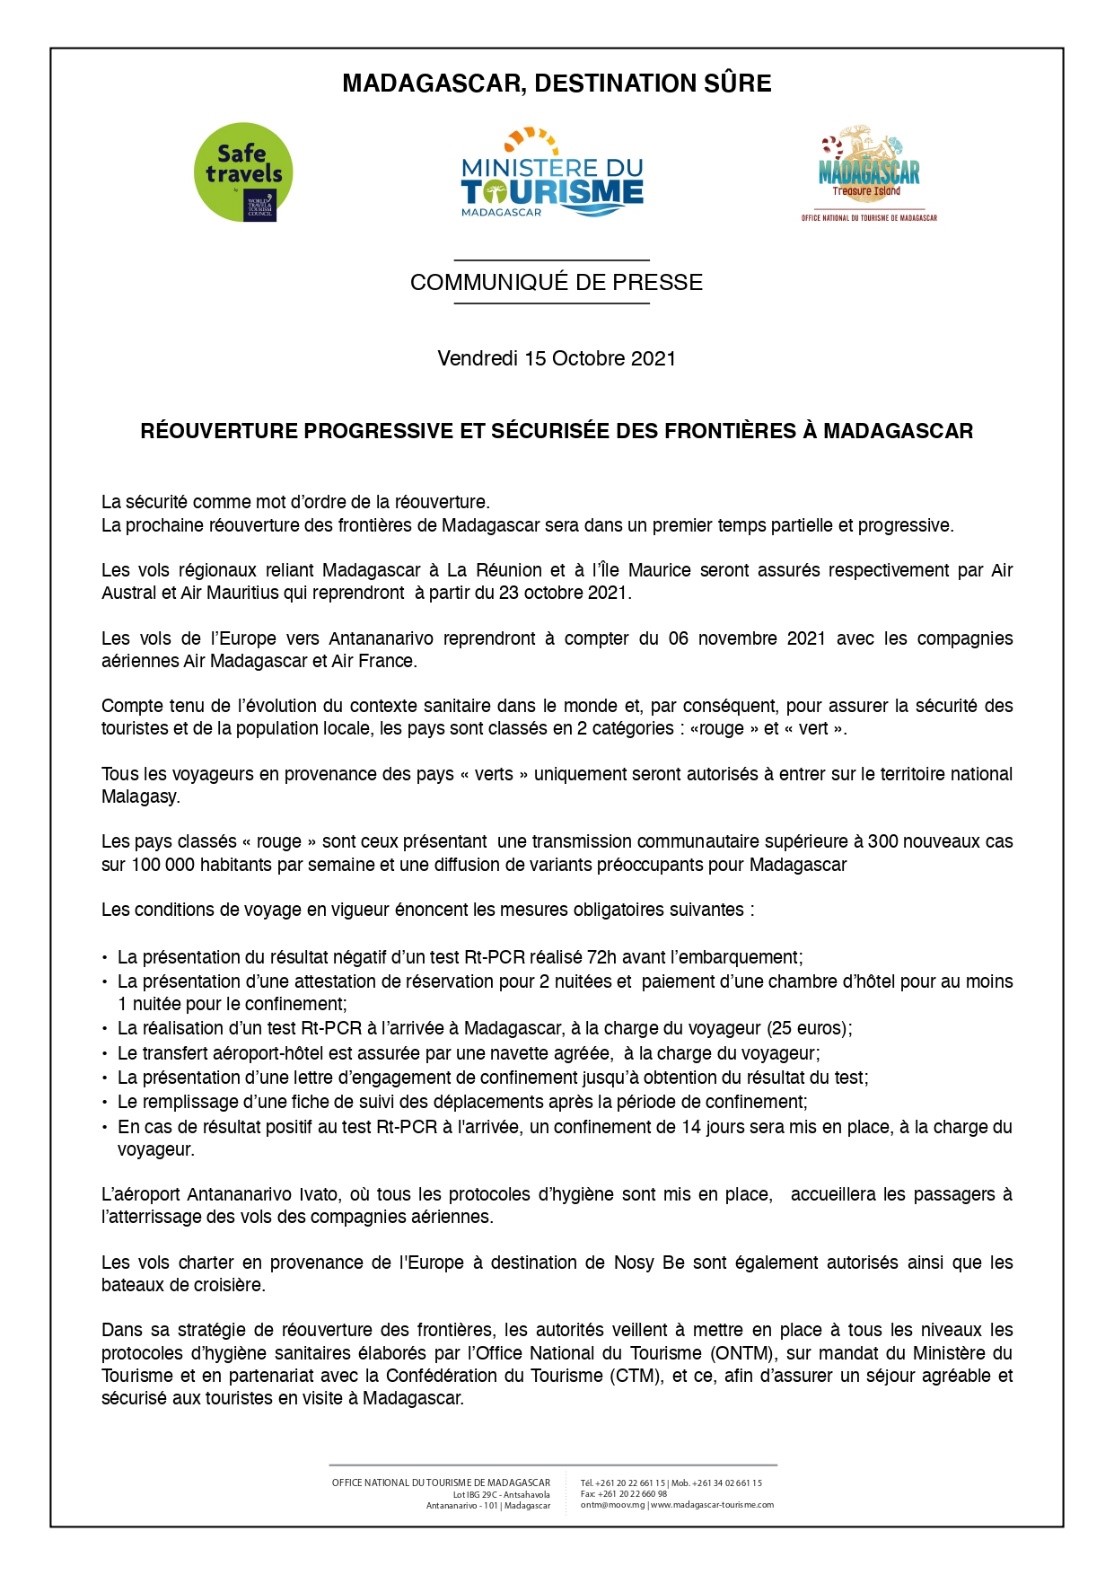 MADAGASCAR ANNONCE LES DATES D’OUVERTURE DES FRONTIERES